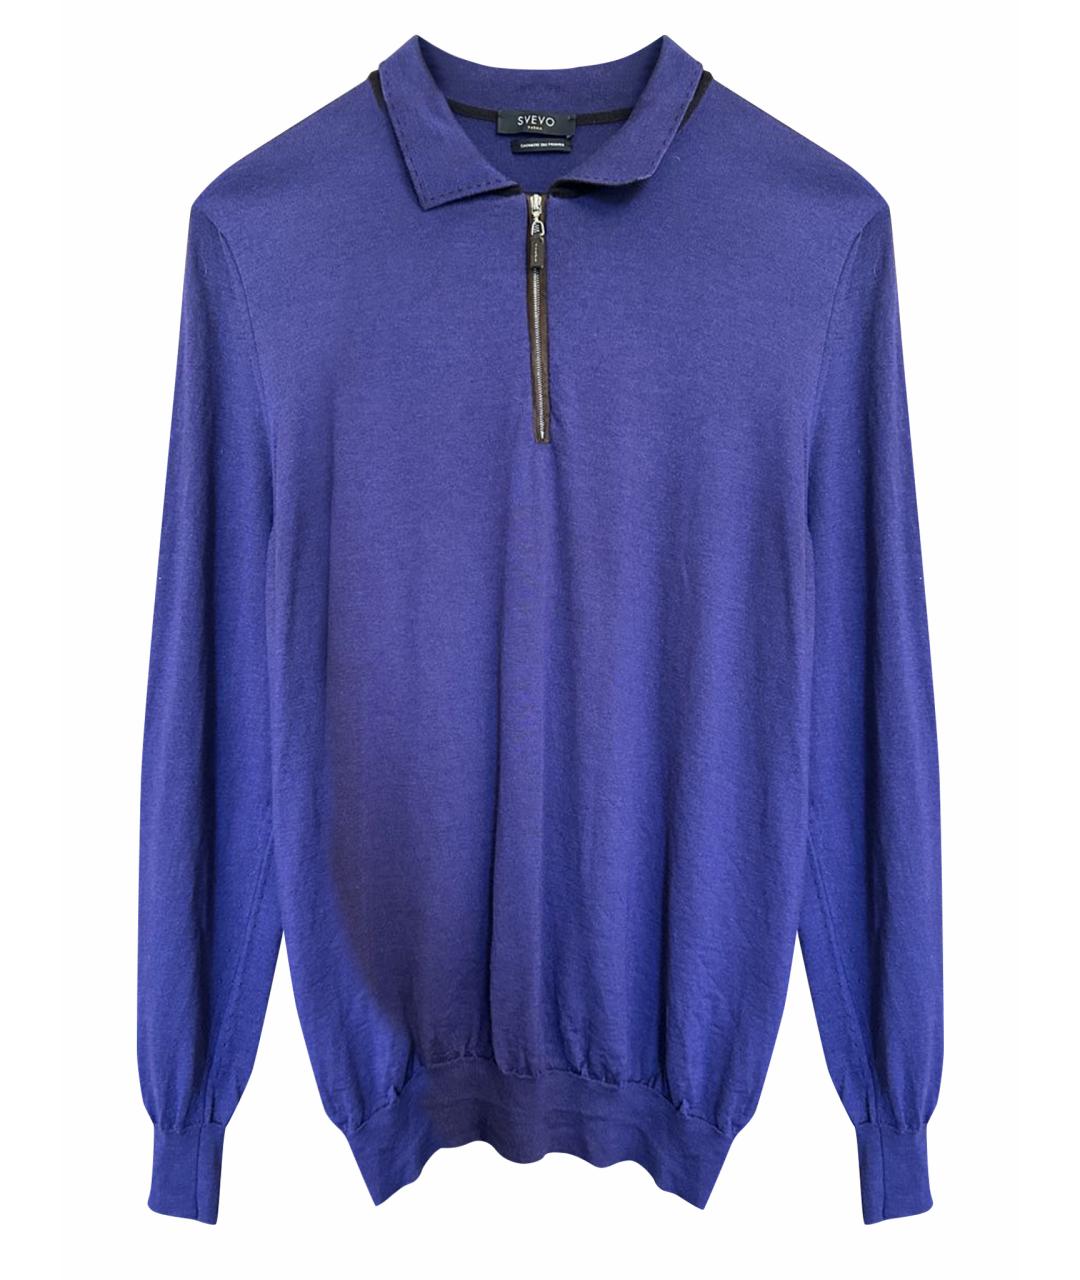 SVEVO Фиолетовый кашемировый джемпер / свитер, фото 1